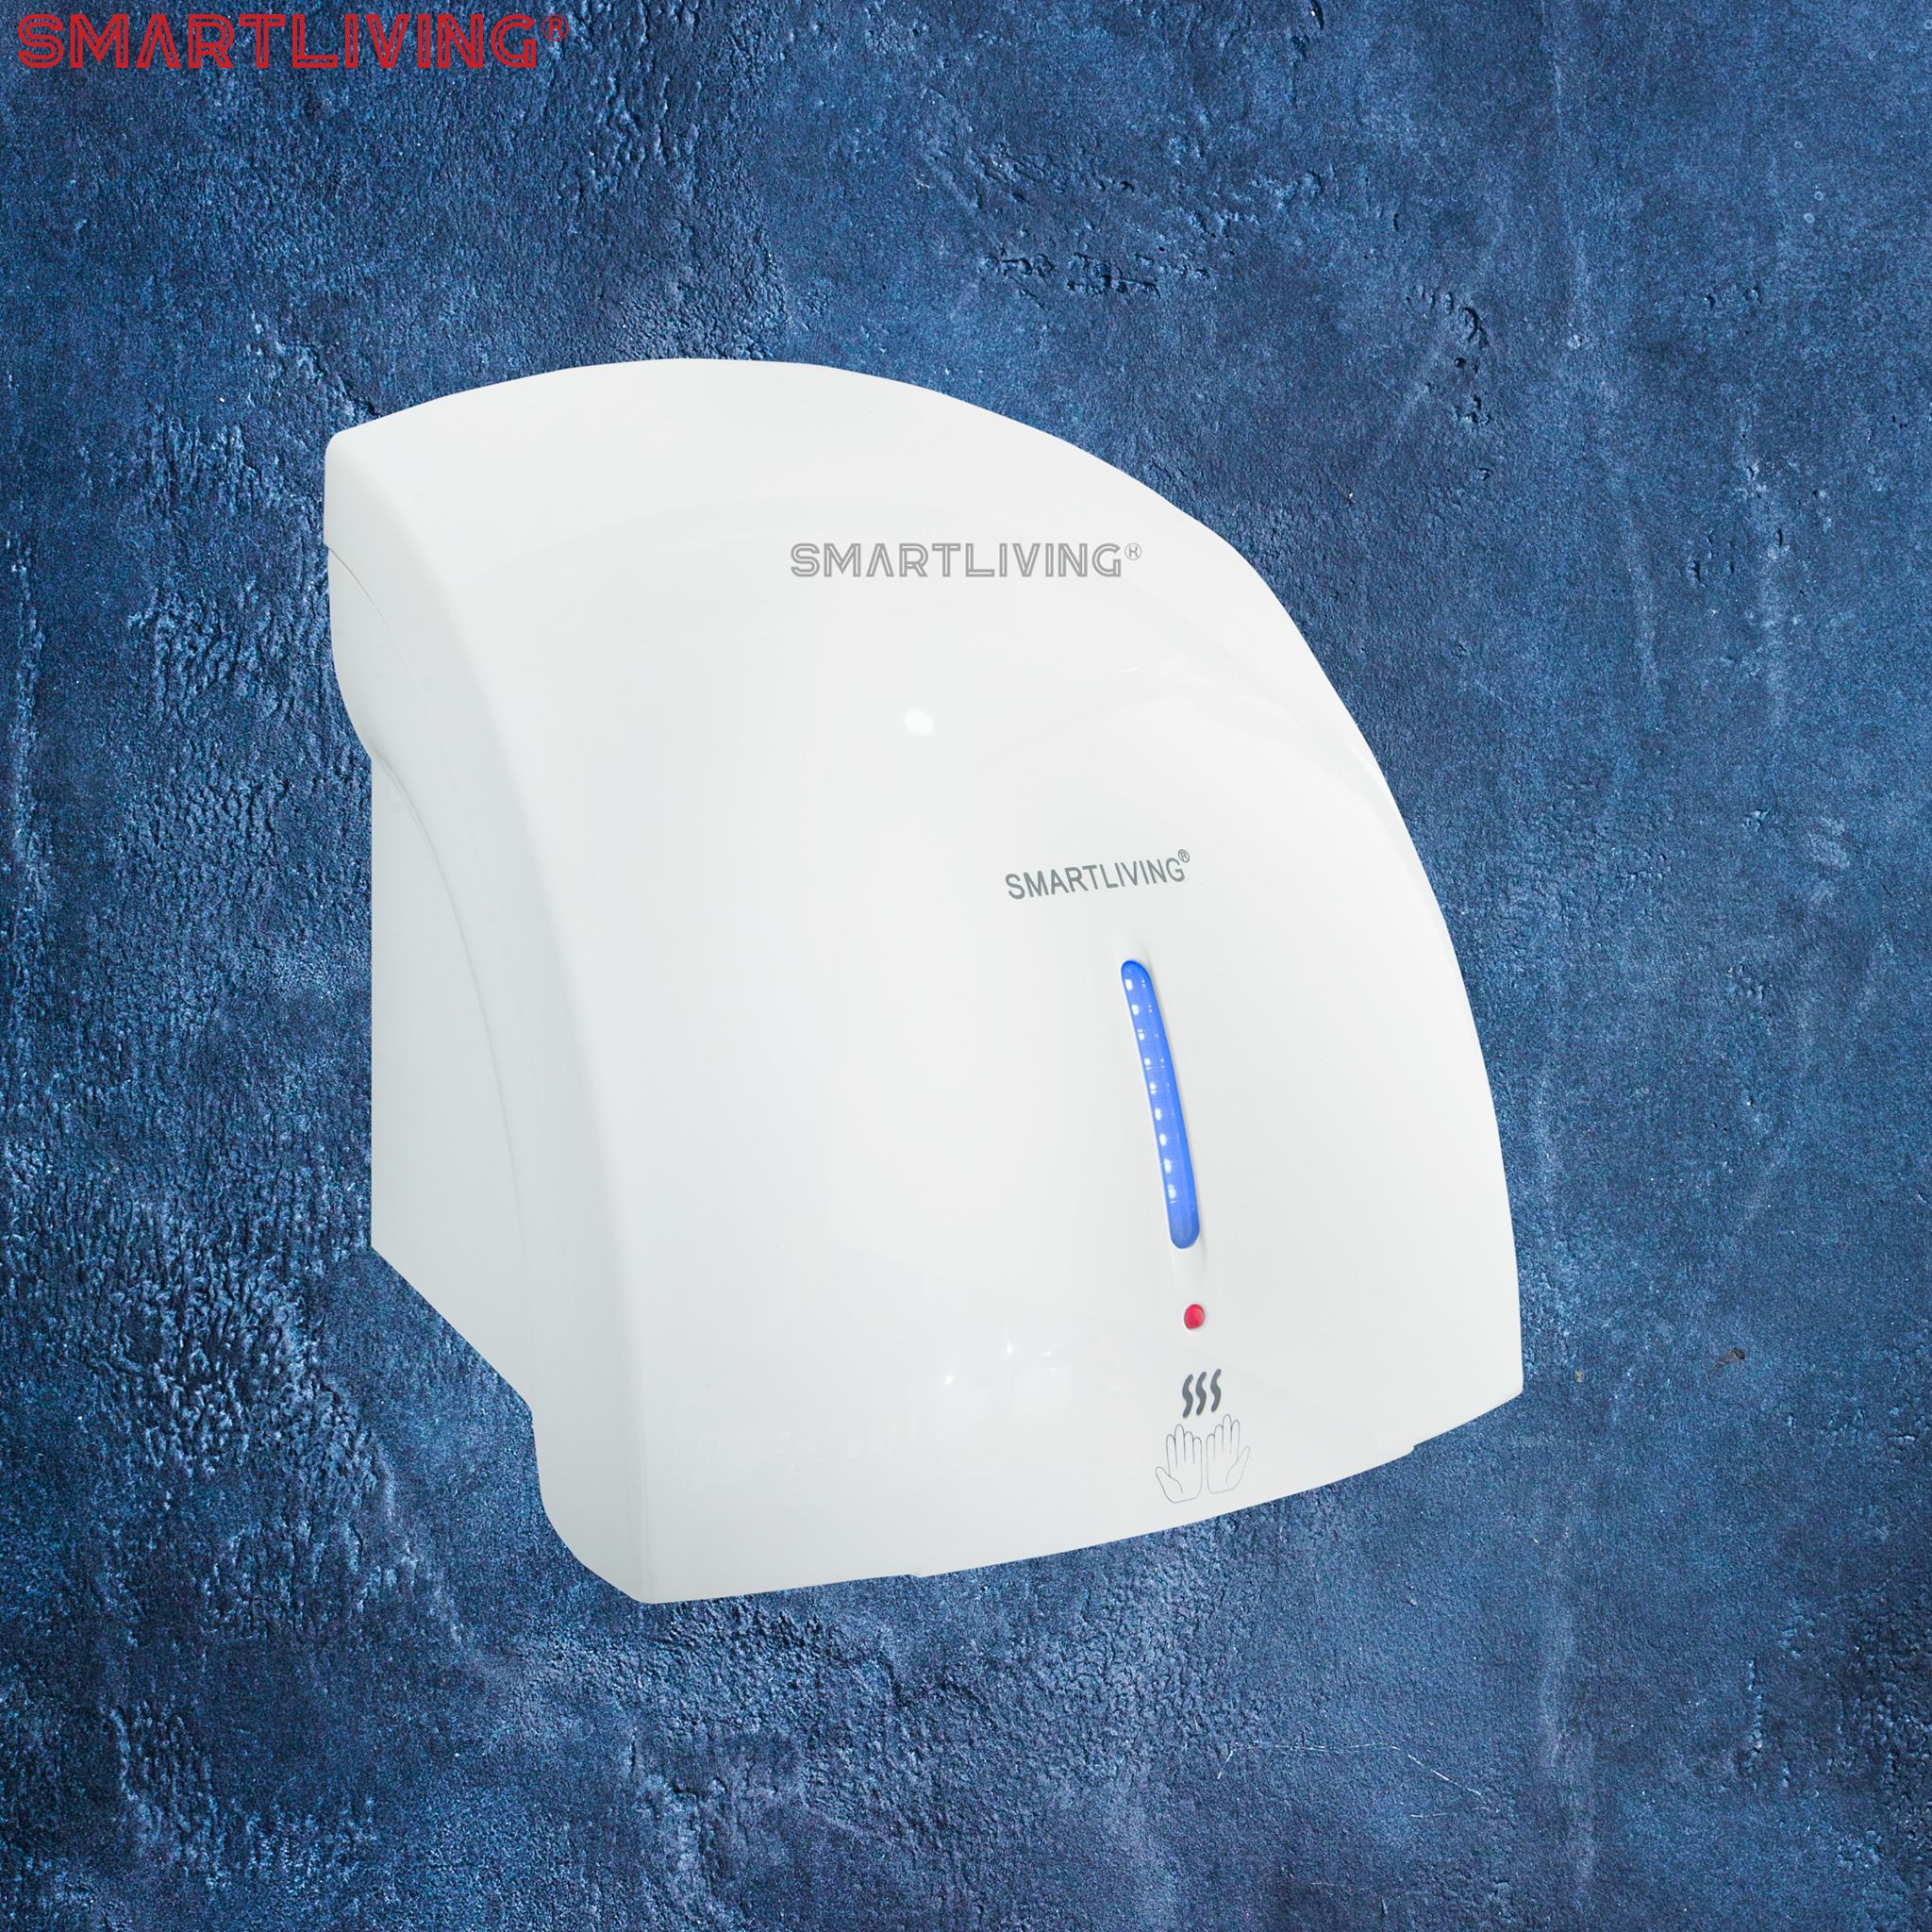 Máy sấy tay tự động SmartLiving là một thiết bị vệ sinh thông minh nhà tắm đáng mua